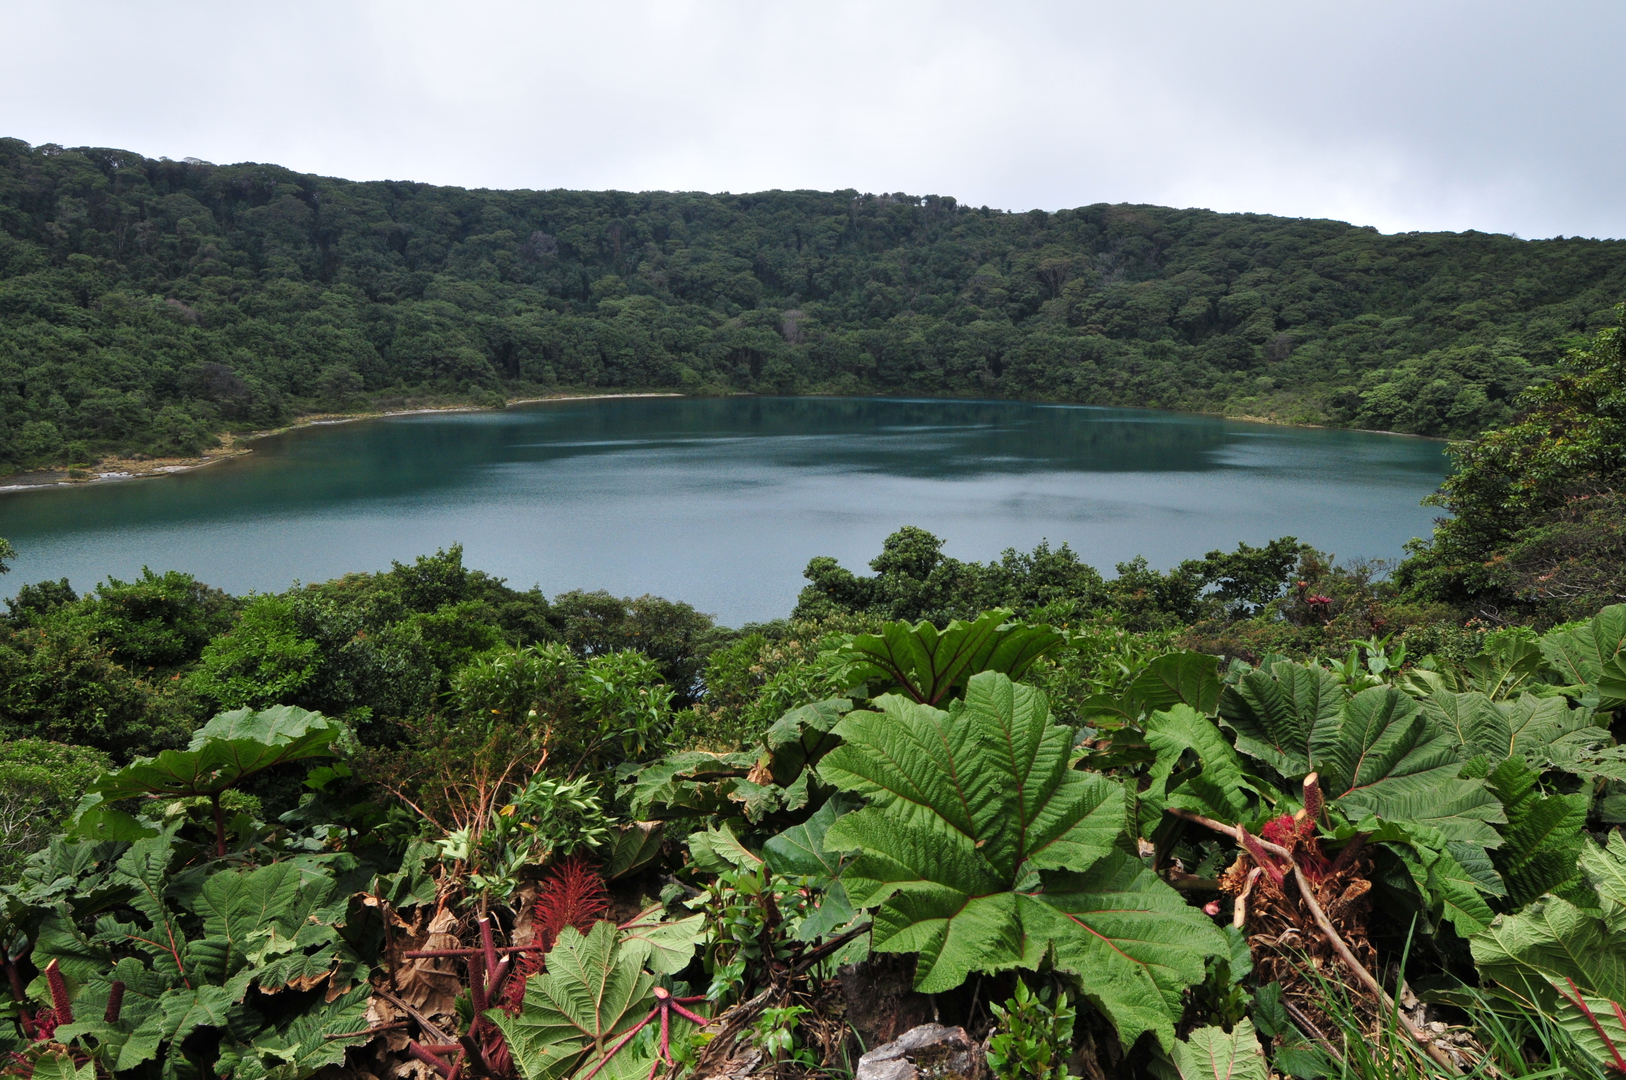 Extinct volcano lake beside Poas